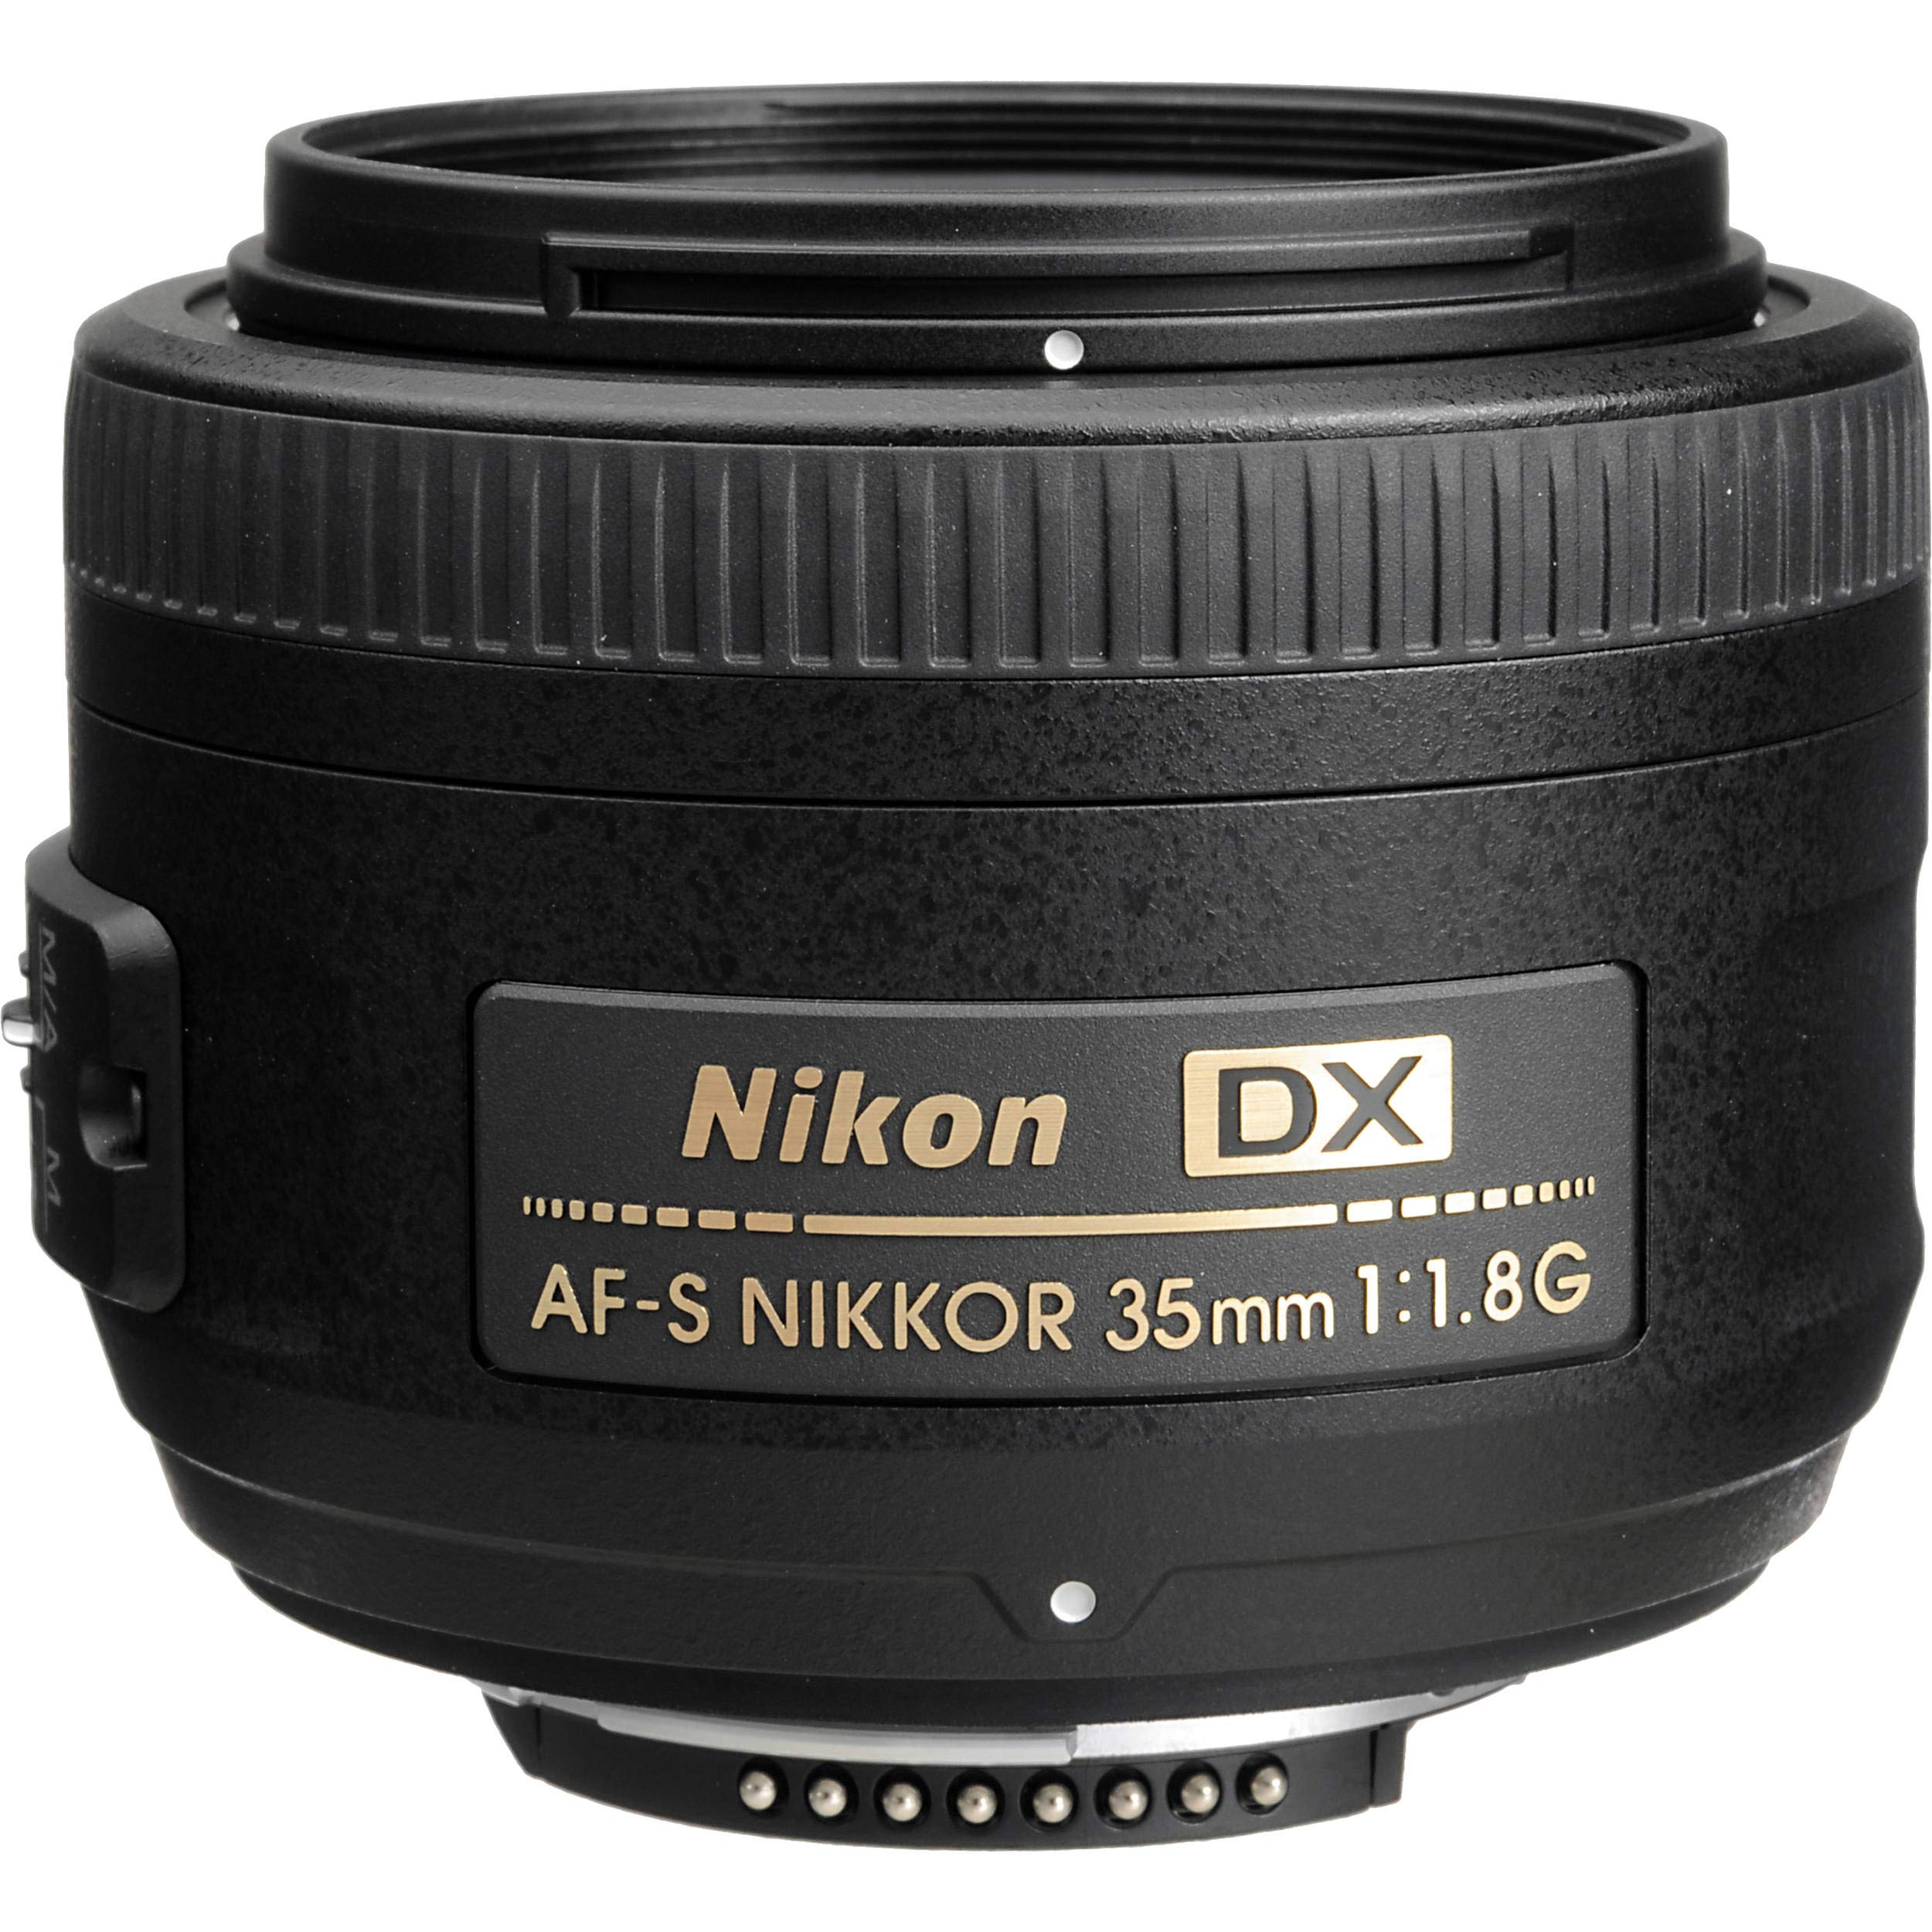 Nikon AF-S DX NIKKOR 35mm f/1.8G Lens + 4.5 inch Vivitar Premium Lens Case + Vivitar Graduated Color Filter Kit + 3pcs UV Lens Filter Kit + Cleaning Kit